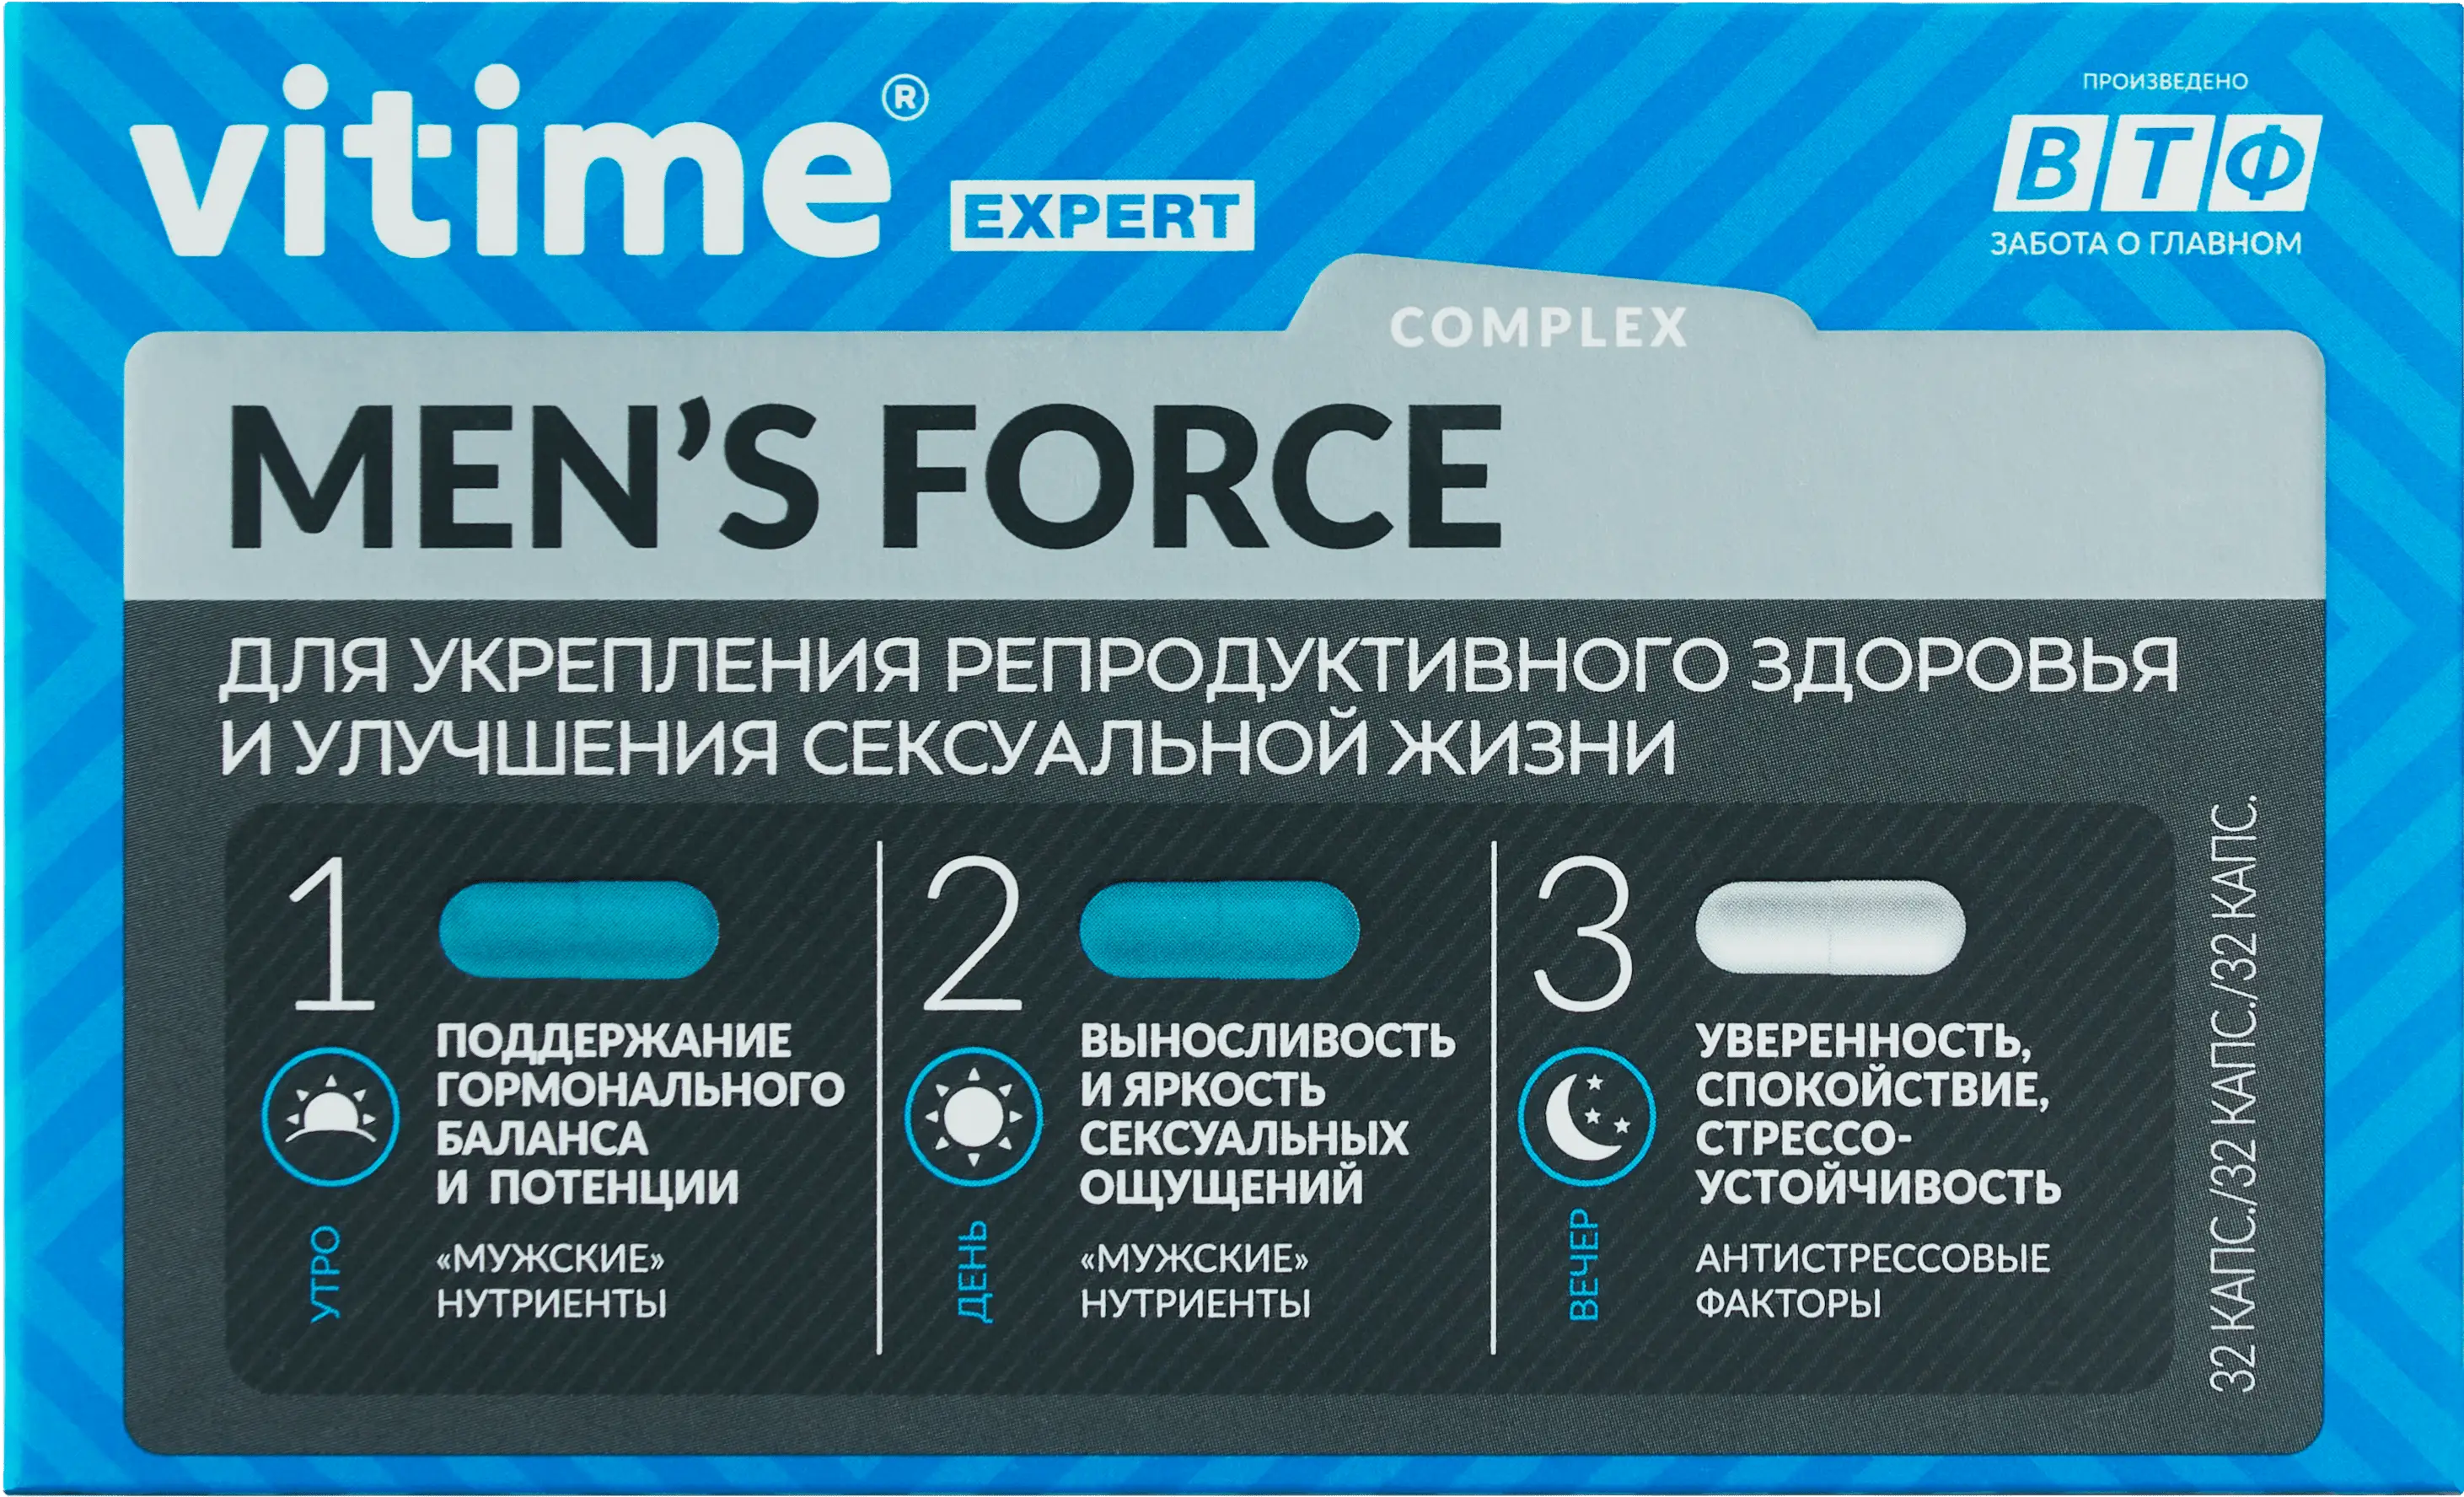 VITime® Expert Men's Force